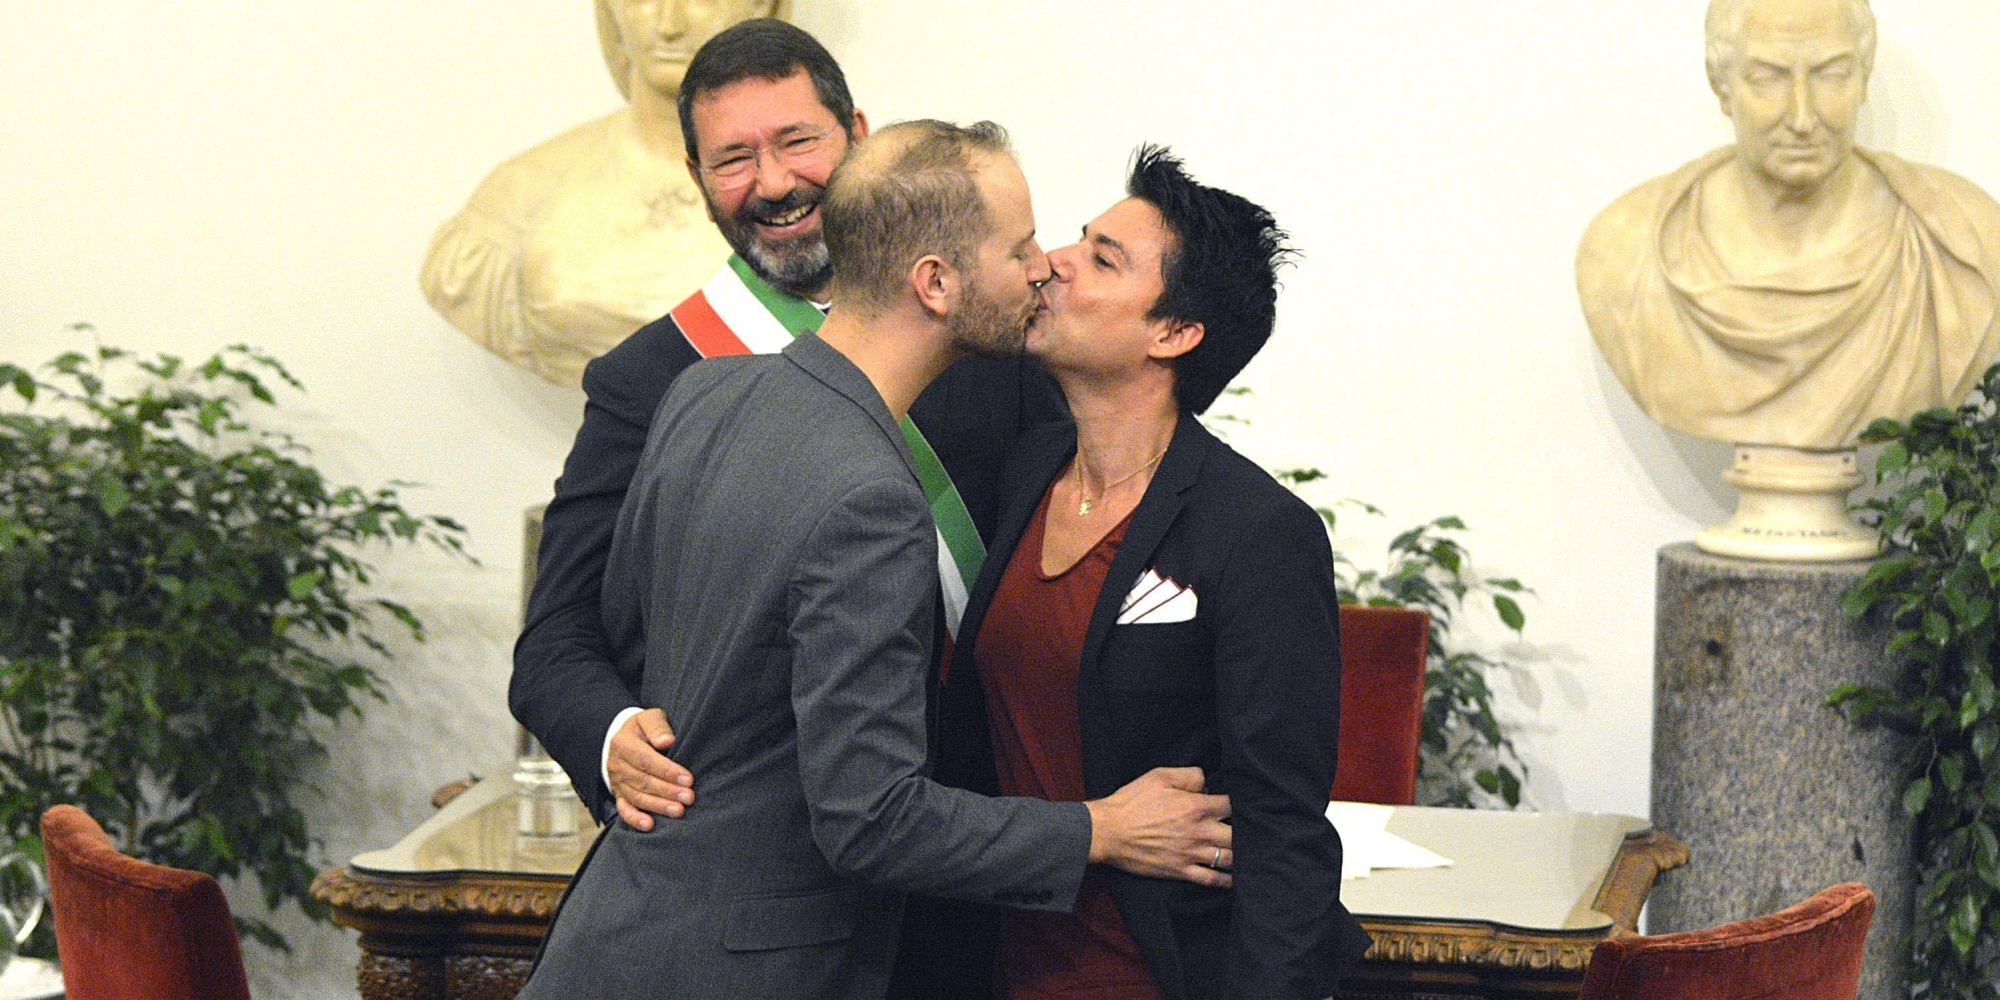 La resa dei conti del Consiglio di Stato: illegittime le trascizioni delle nozze gay celebrate all’estero